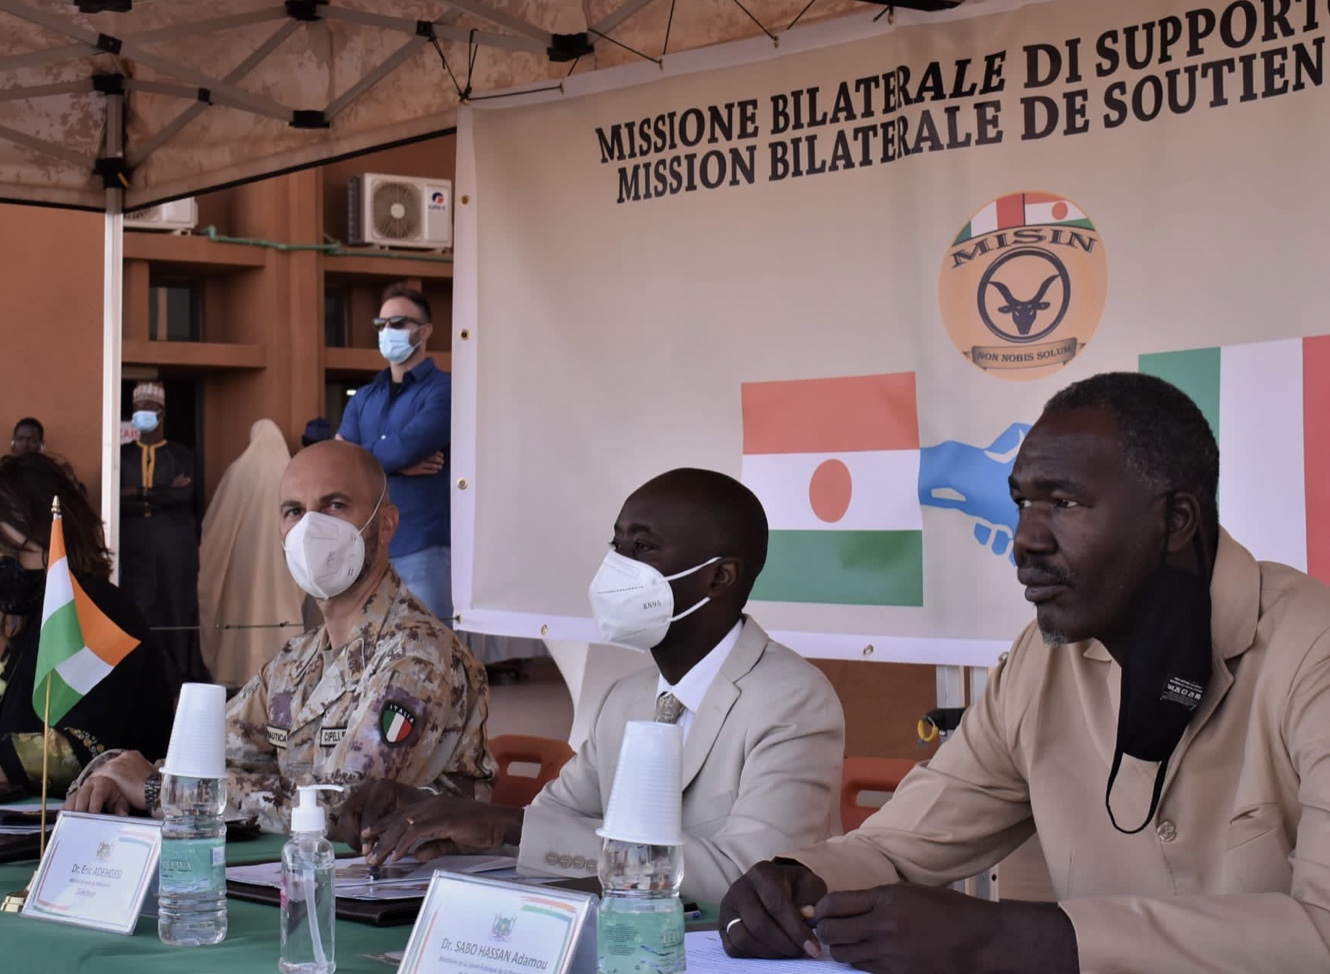 Obrana-Maeci v Nigeri: MISIN a talianske veľvyslanectvo dodávajú lekárske vybavenie do nemocnice Niamey